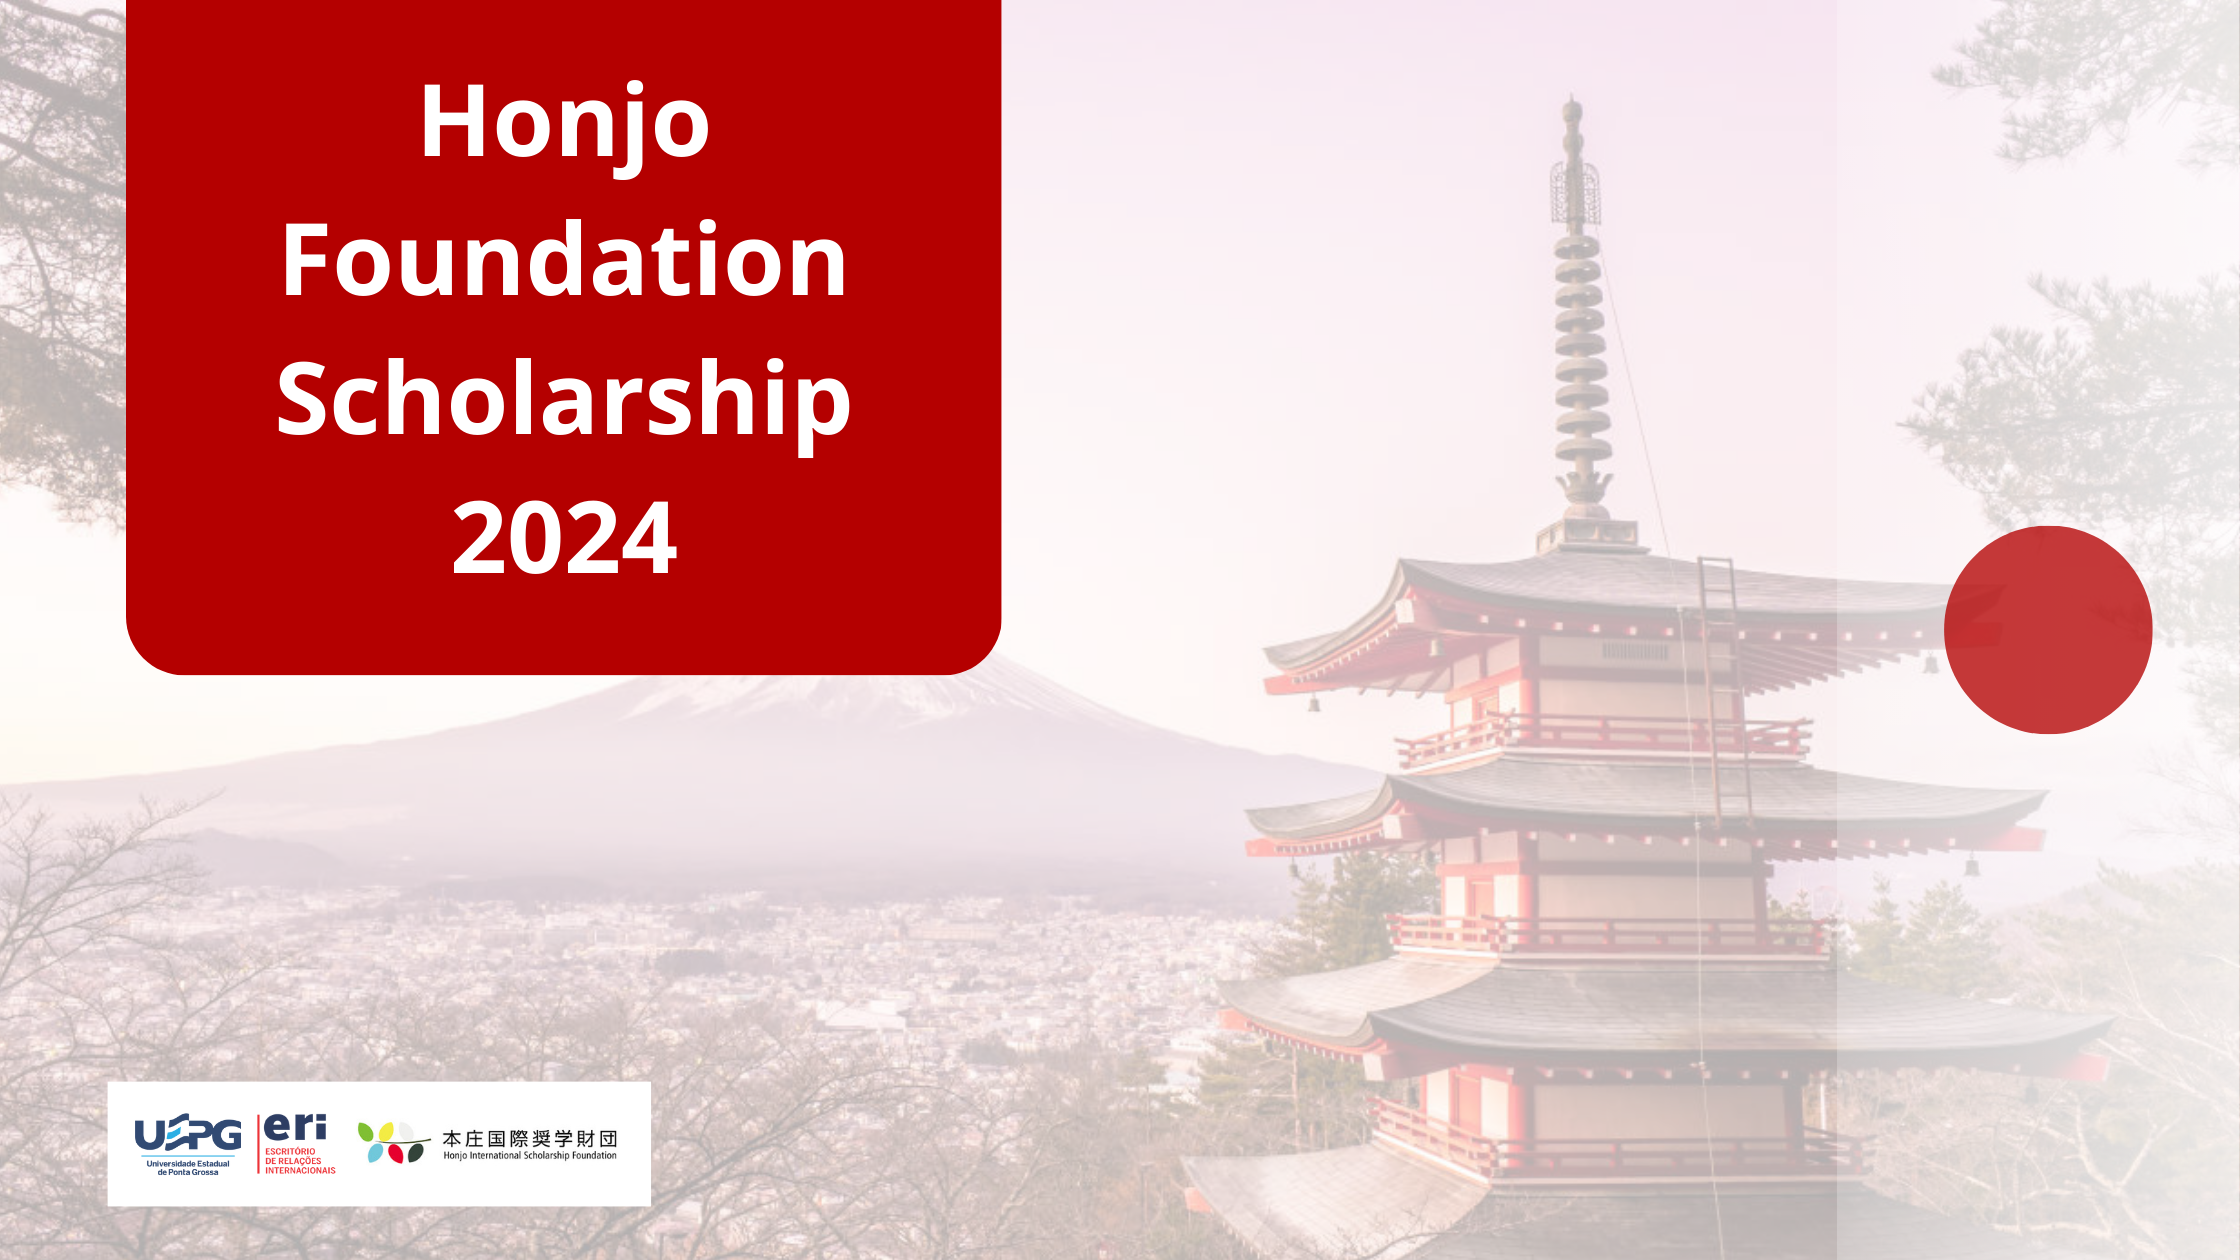 Honjo Foundation Scholarship 2024